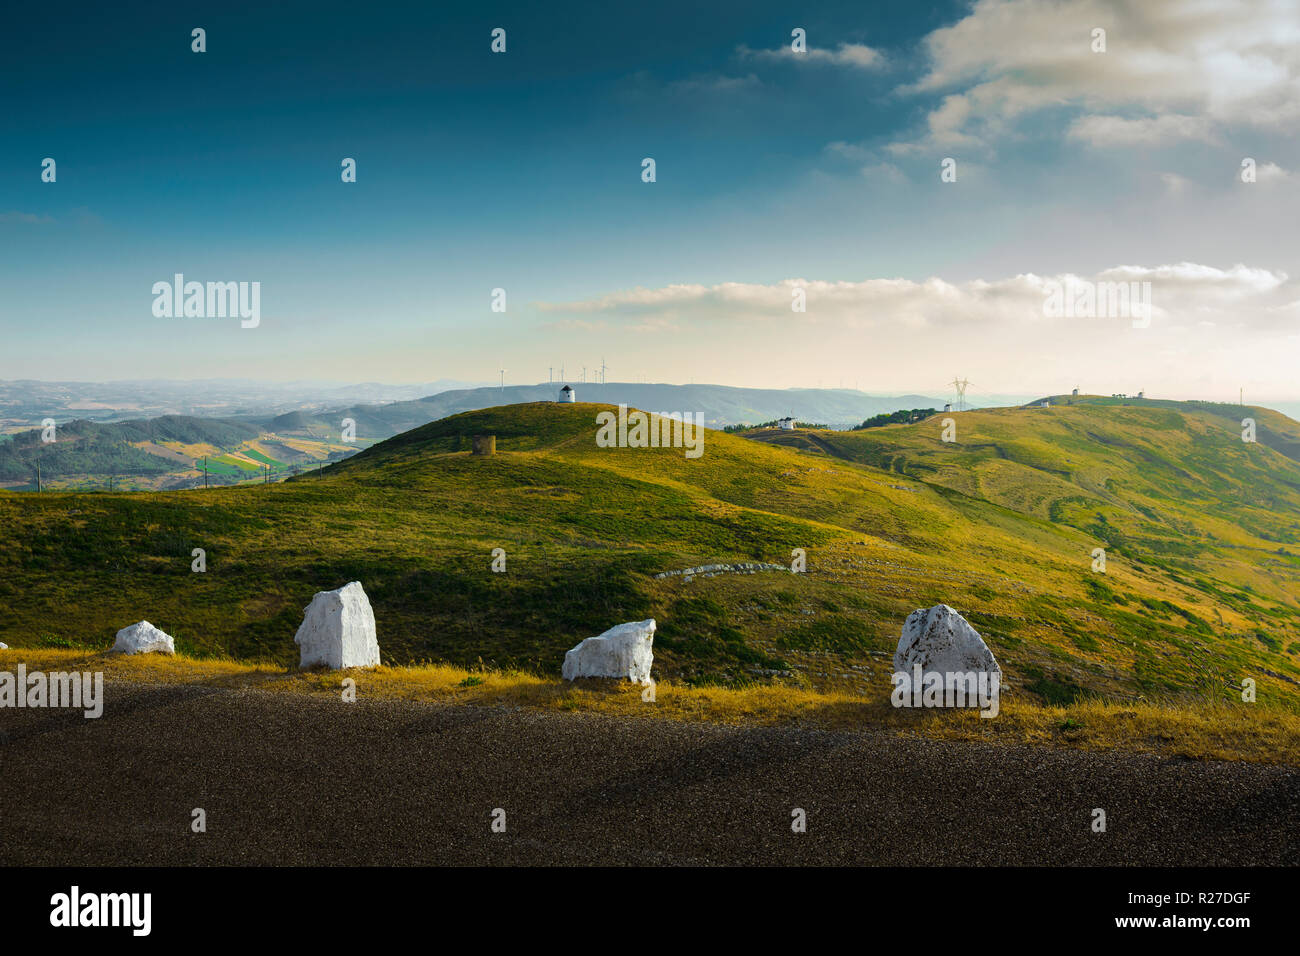 Bellissimo paesaggio portoghese con mulini a vento sulle colline Foto Stock